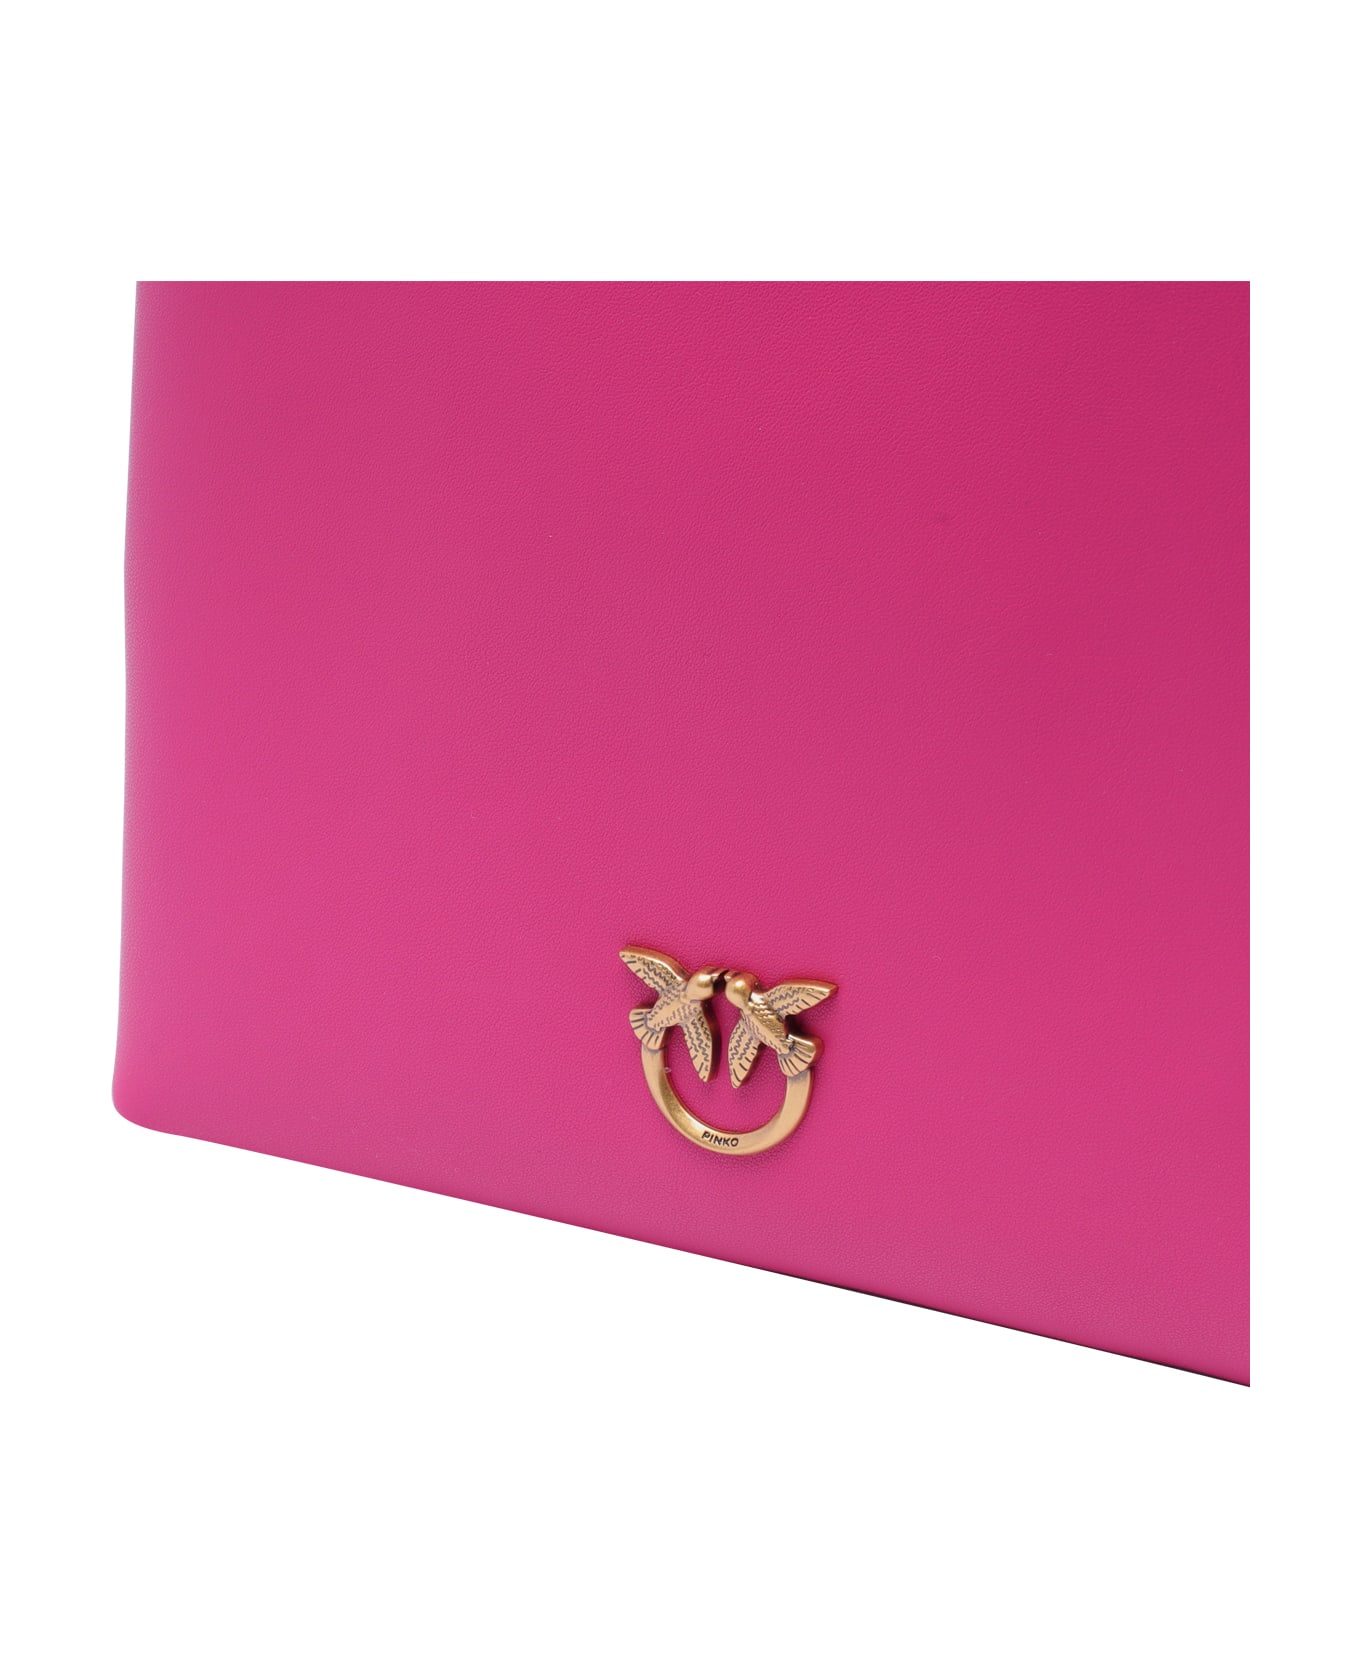 Pinko Mini Shopper Handbag - Fuchsia トートバッグ